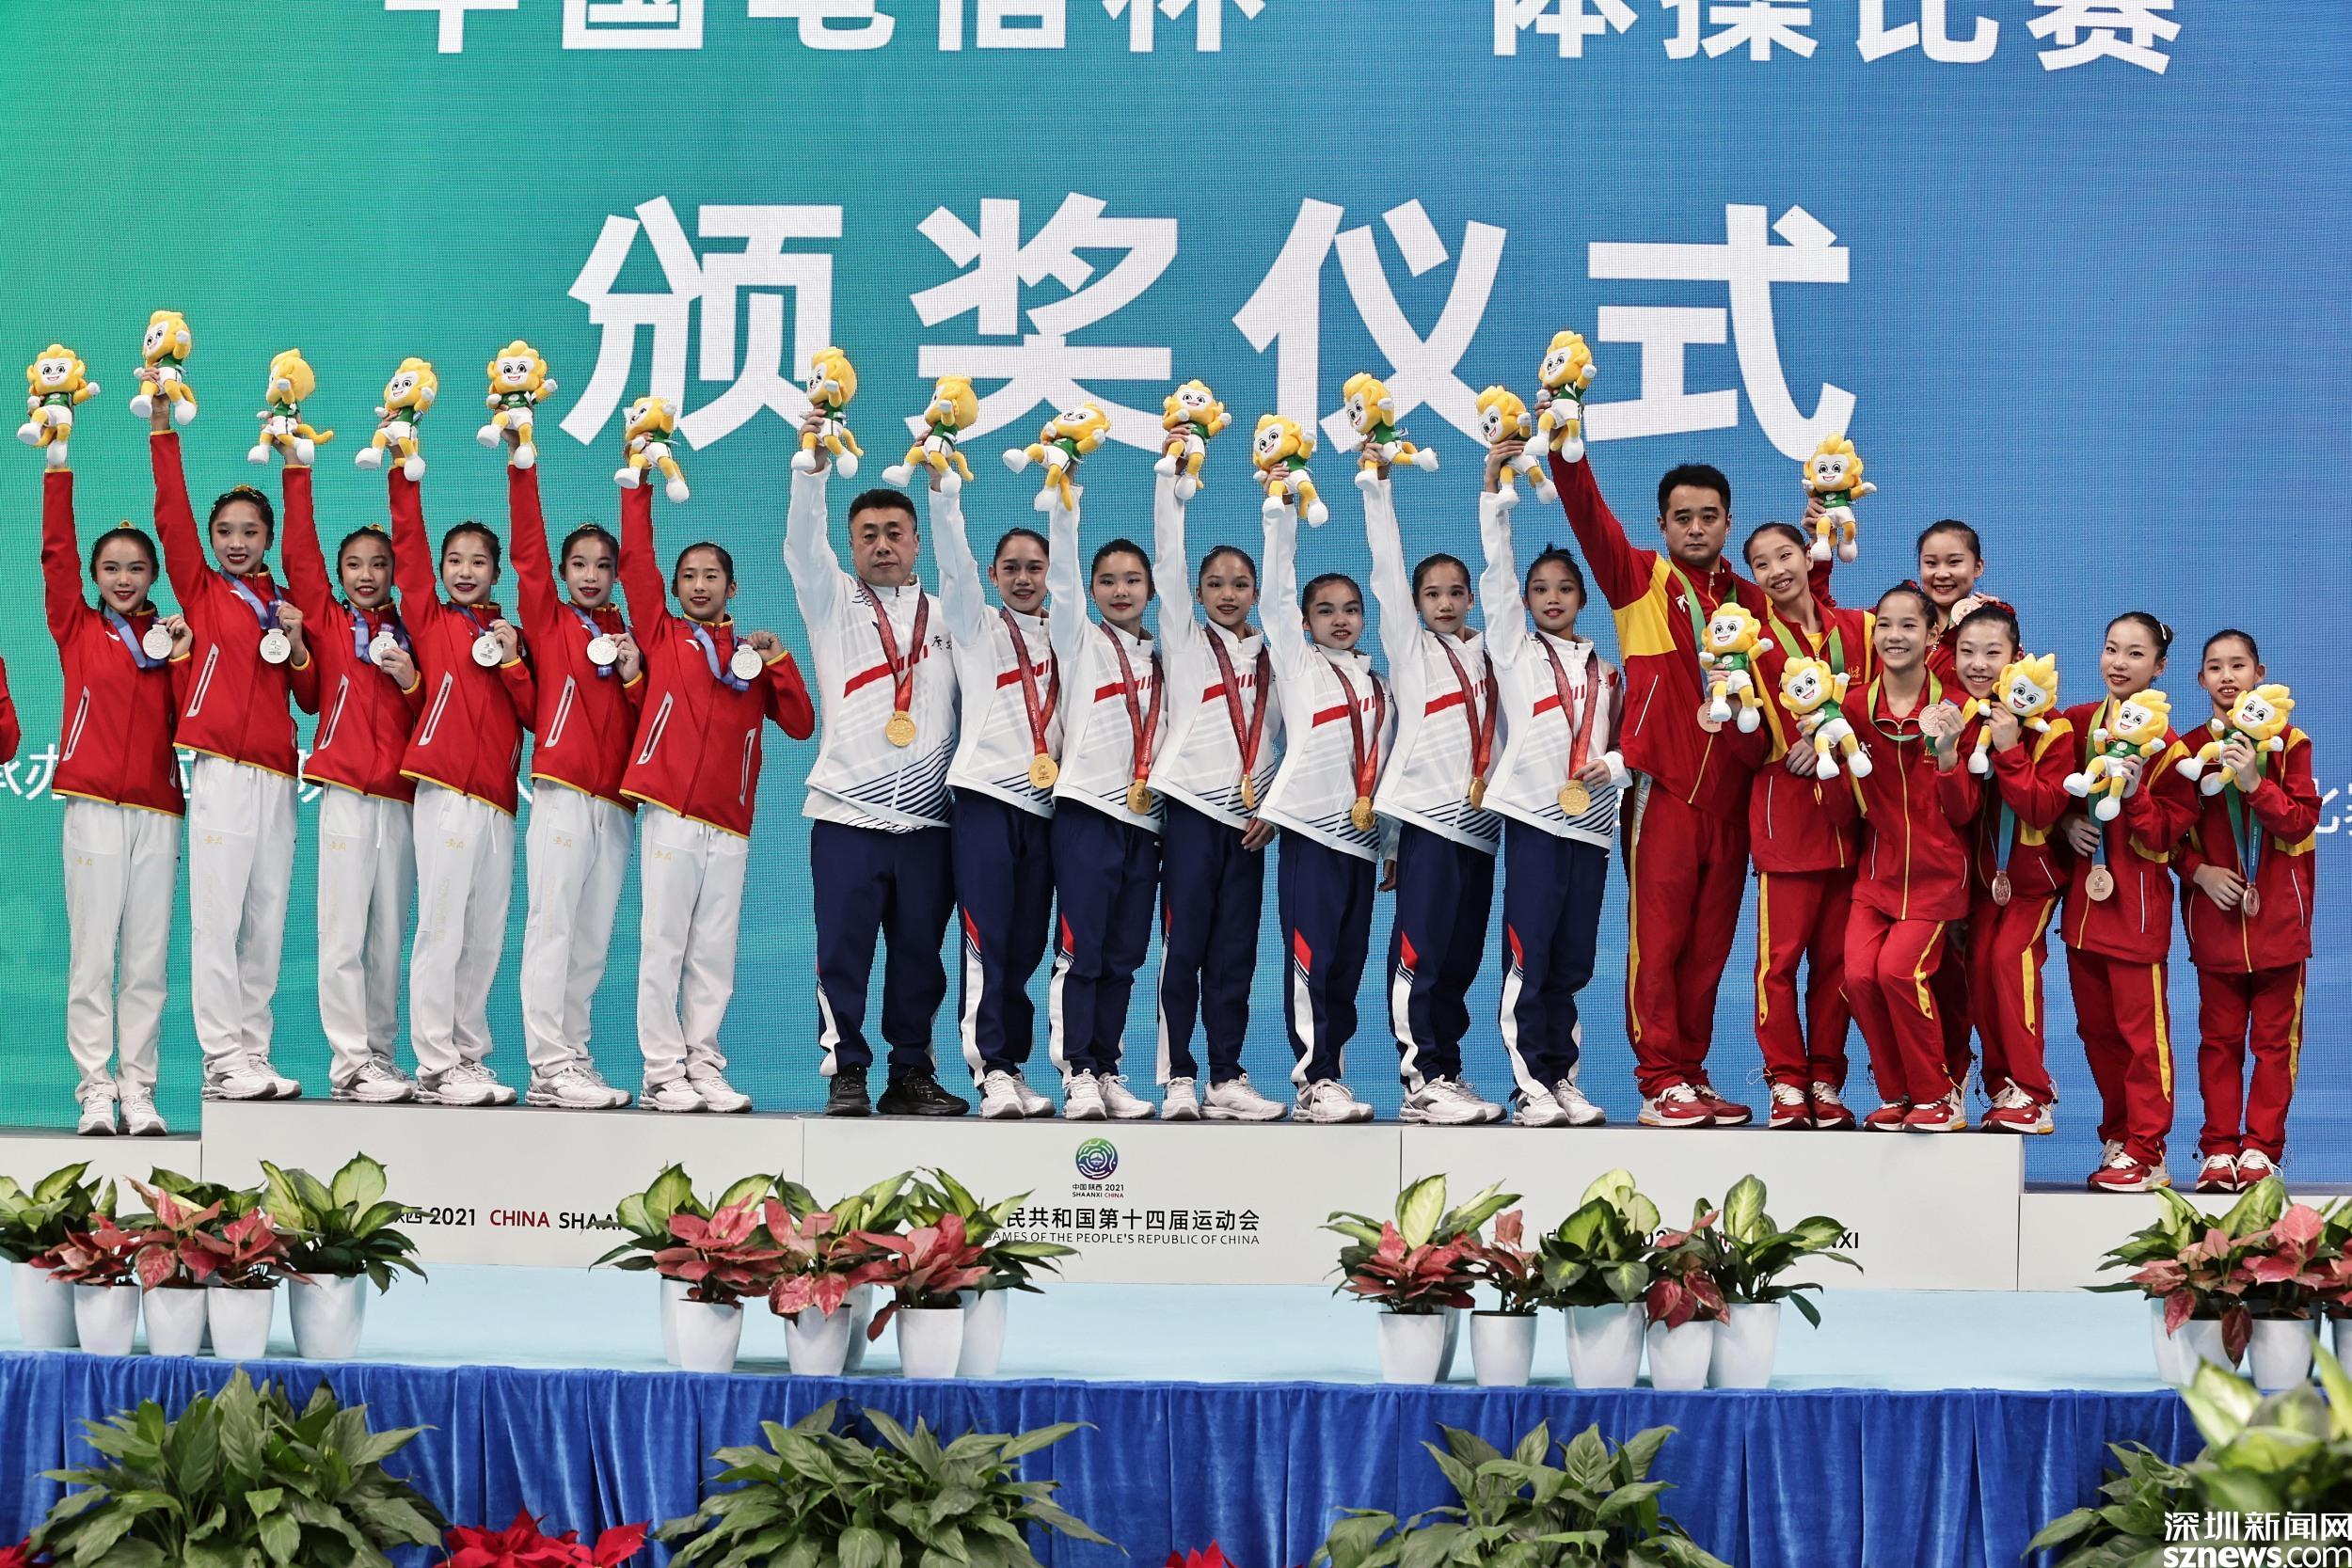 欧钰珊毕青青全运会上获体操女子团体冠军 她们都是华新小学校友